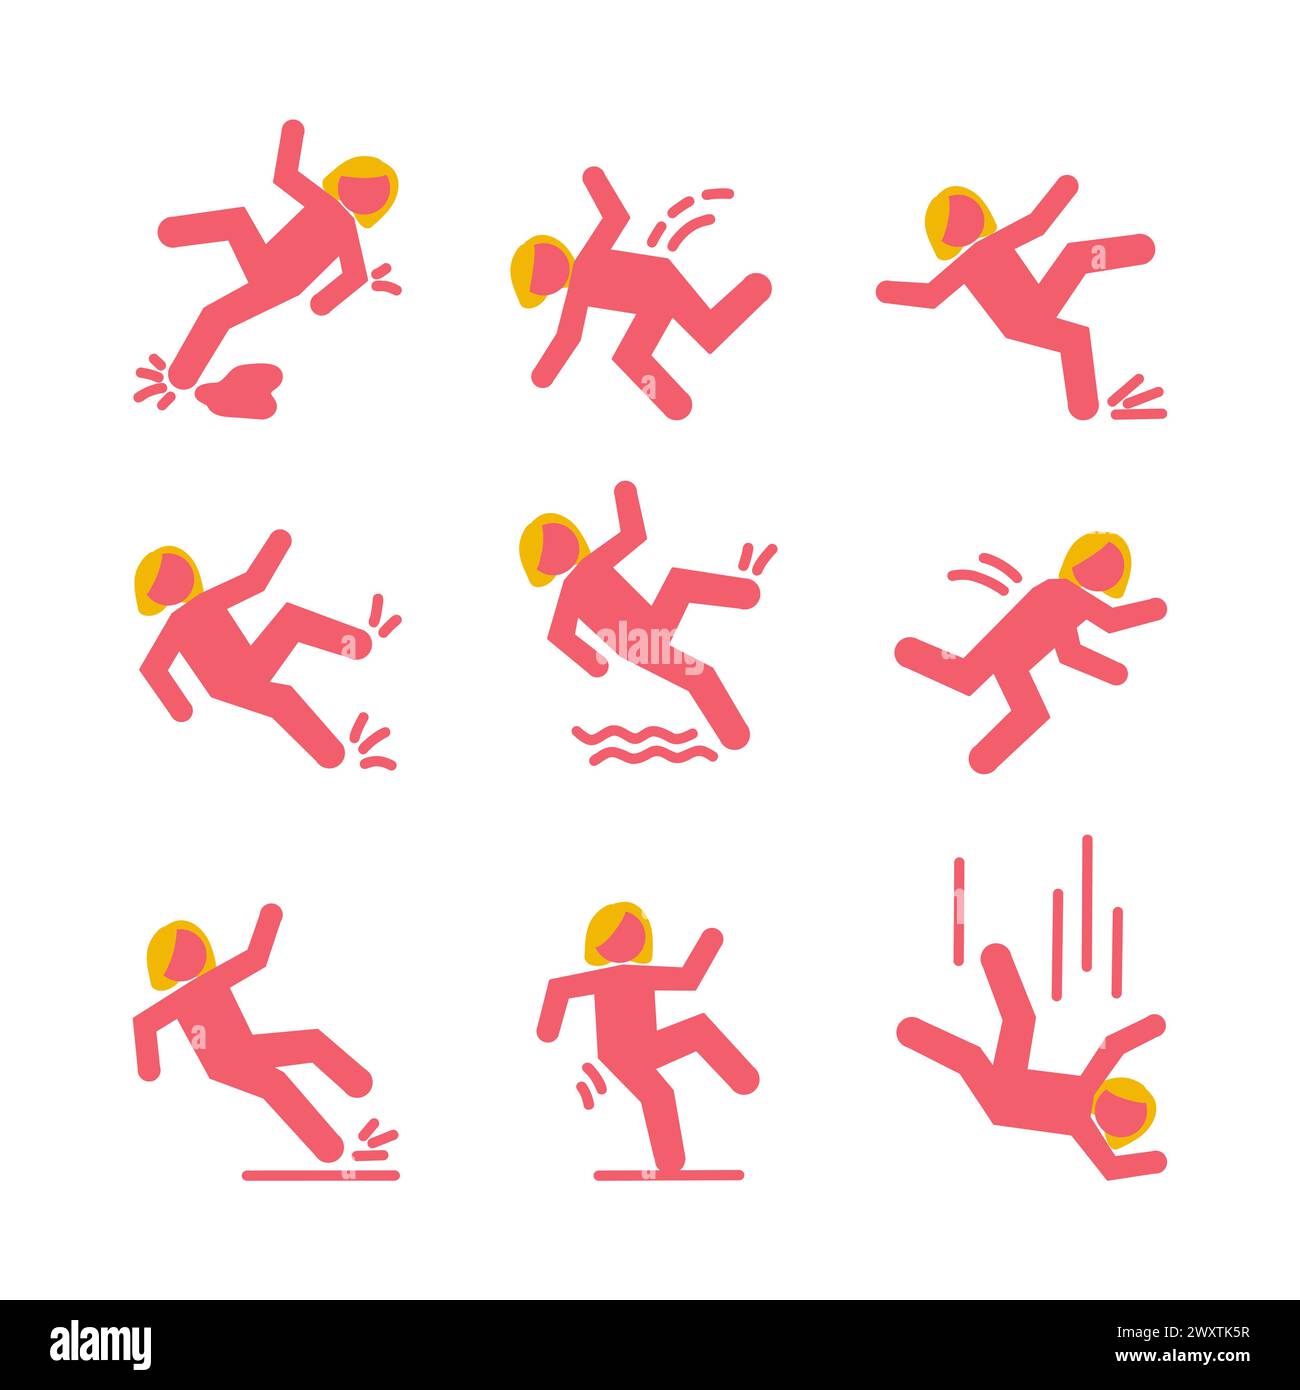 Set von Warnsymbolen mit rosa fallender Stabfigur Frau. Sie fällt die Treppe runter und über den Rand. Nasser Boden, hängt auf der Treppe fest. Sicherheit am Arbeitsplatz Stock Vektor